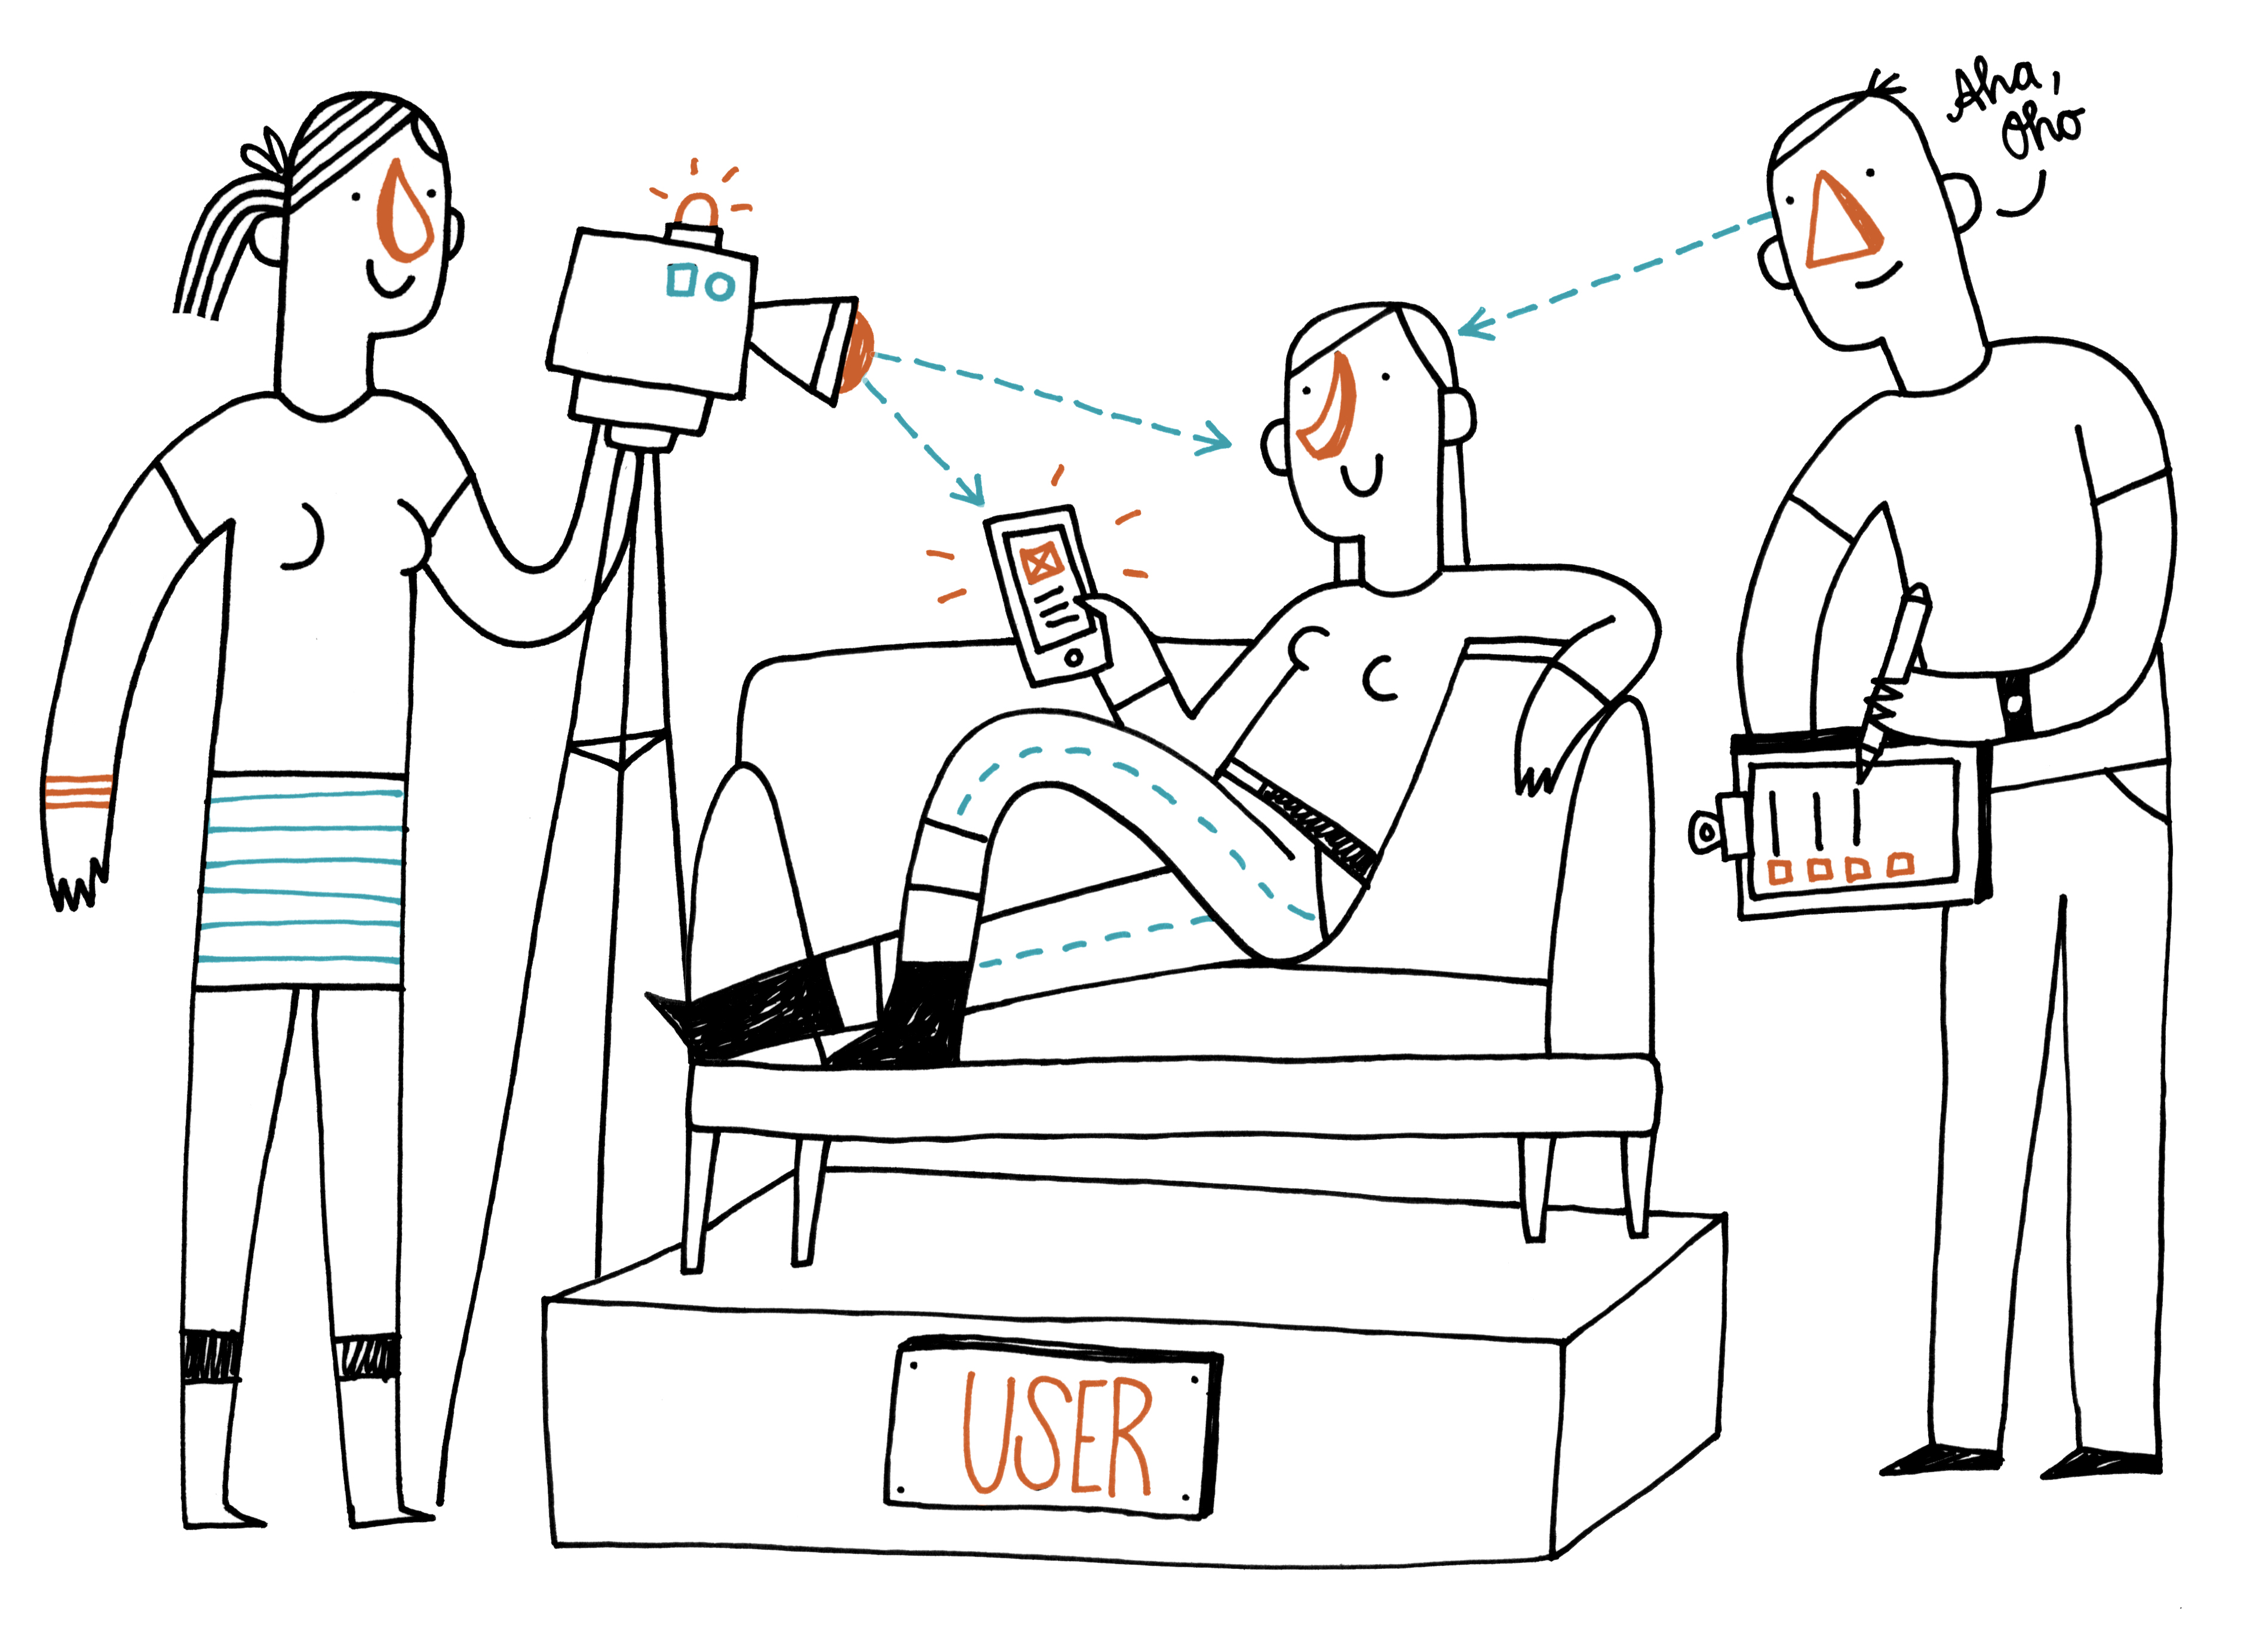 Freundliche Strichzeichnung eines Users, der entspannt auf einem Sofa sitzt und eine App testet. Daneben stehen 2 Personen mit Kamera und Notizblock.